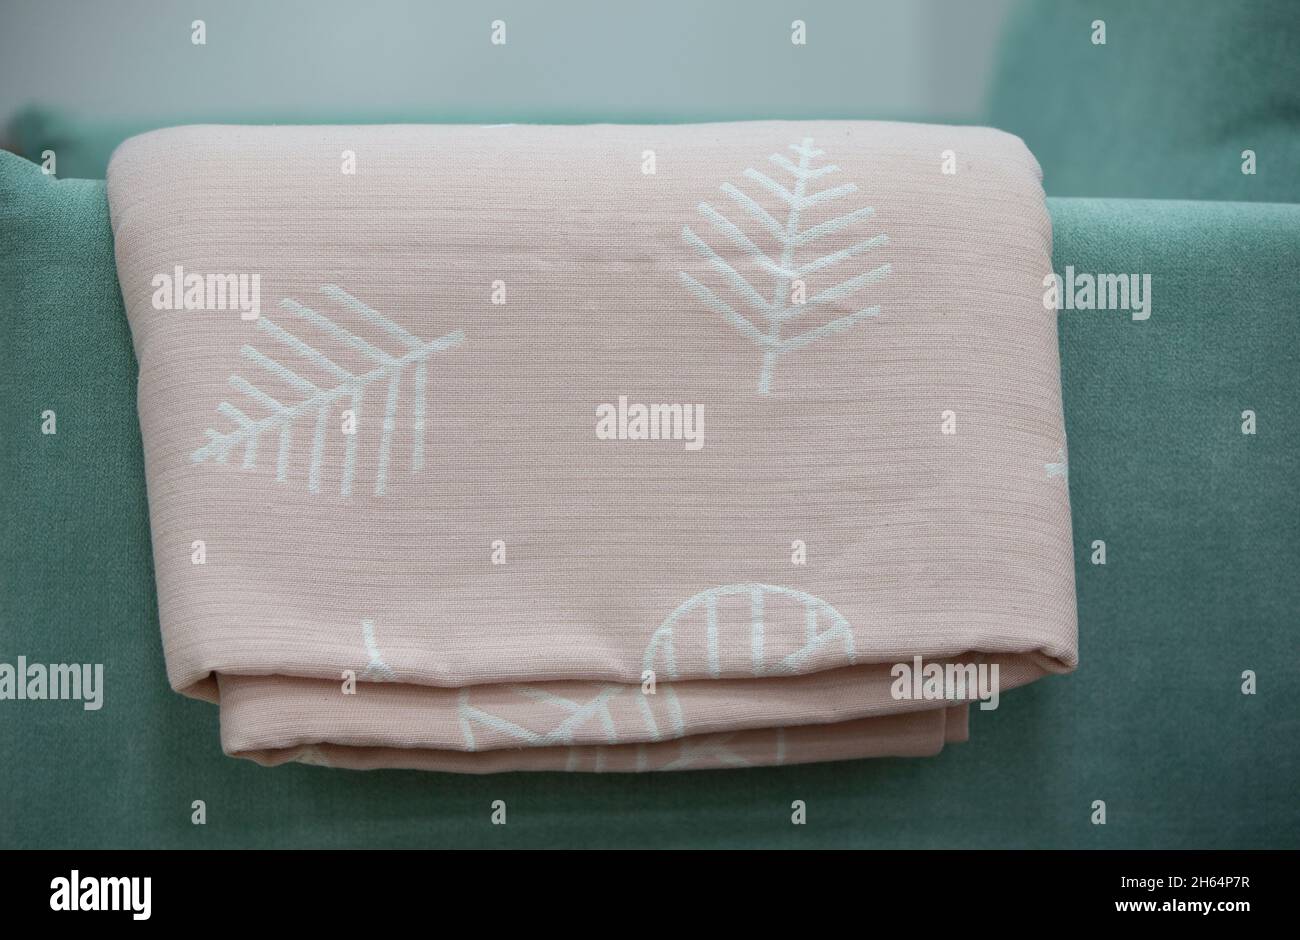 Auf der grünen Rückseite des Sofas ruht ein pinkfarbenes Coverlet mit Blumenmotiv. Stockfoto